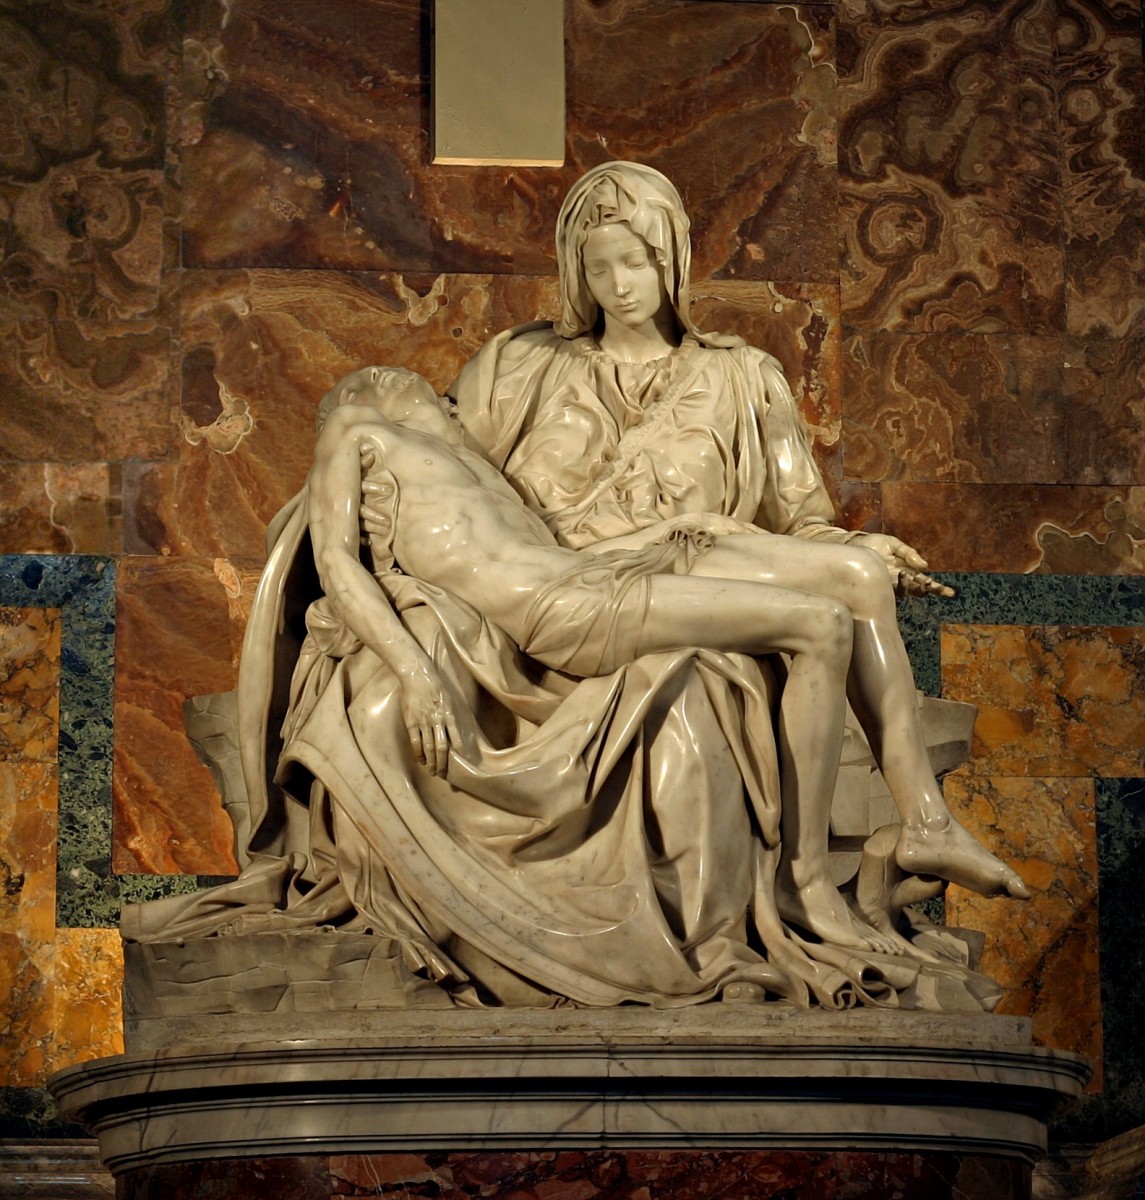 Michelangelo: The Poet